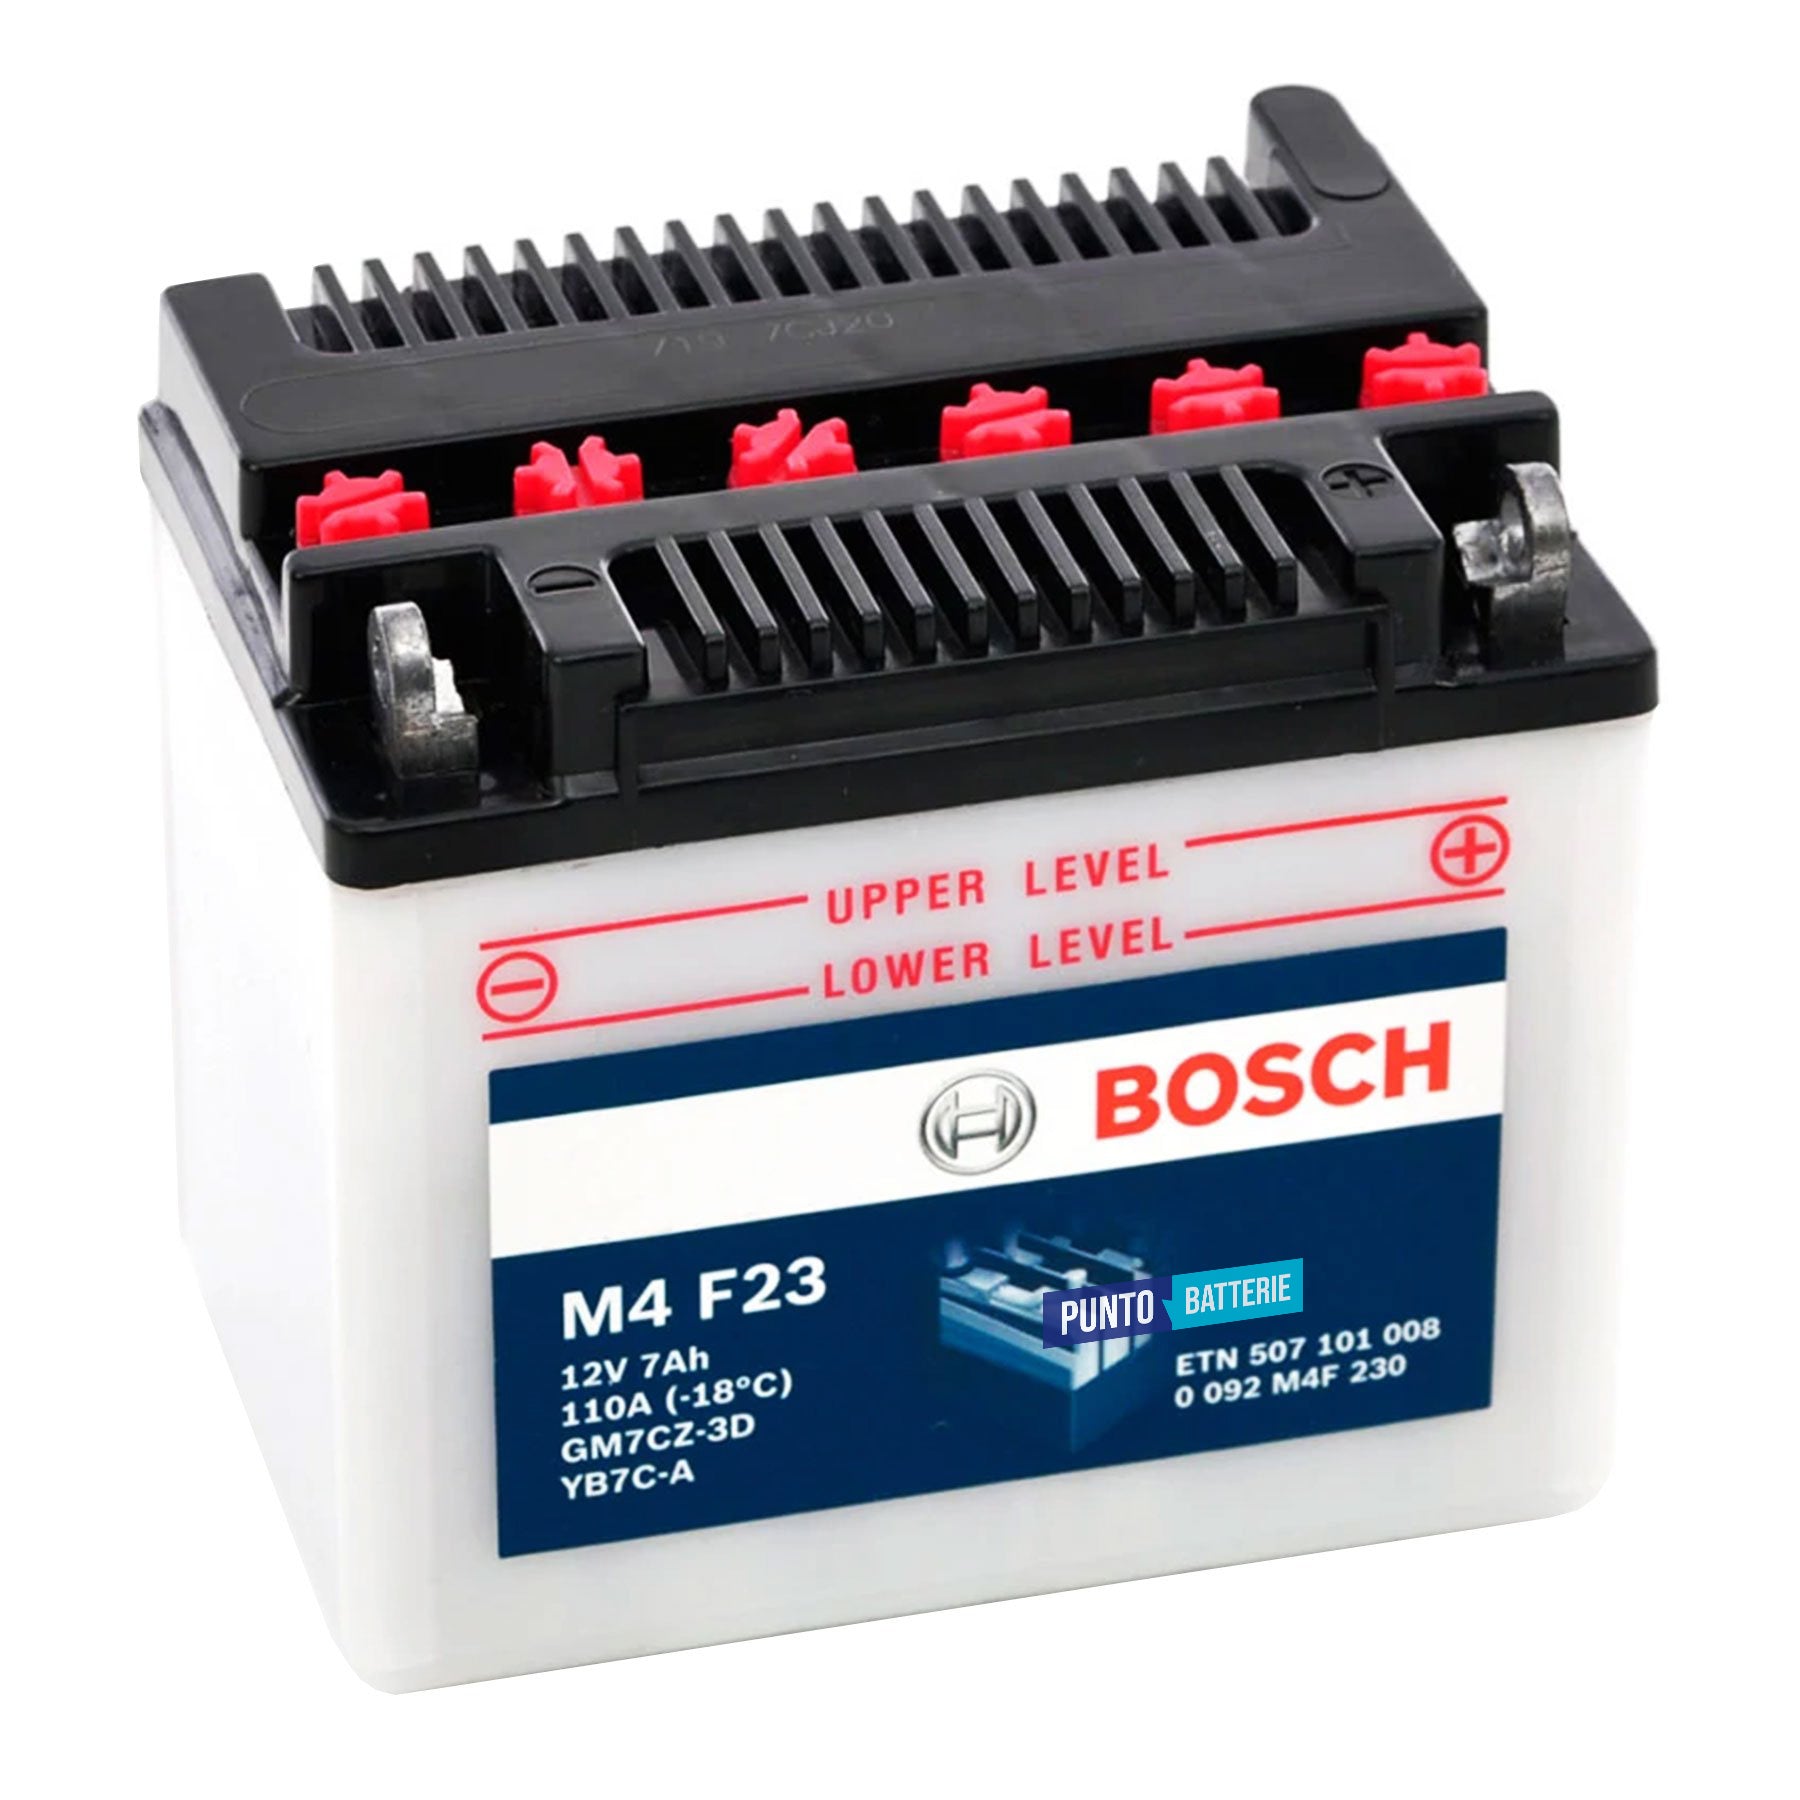 Batteria originale Bosch M4 M4F23, dimensioni 130 x 90 x 114, polo positivo a destra, 12 volt, 7 amperora, 110 ampere. Batteria per moto, scooter e powersport.